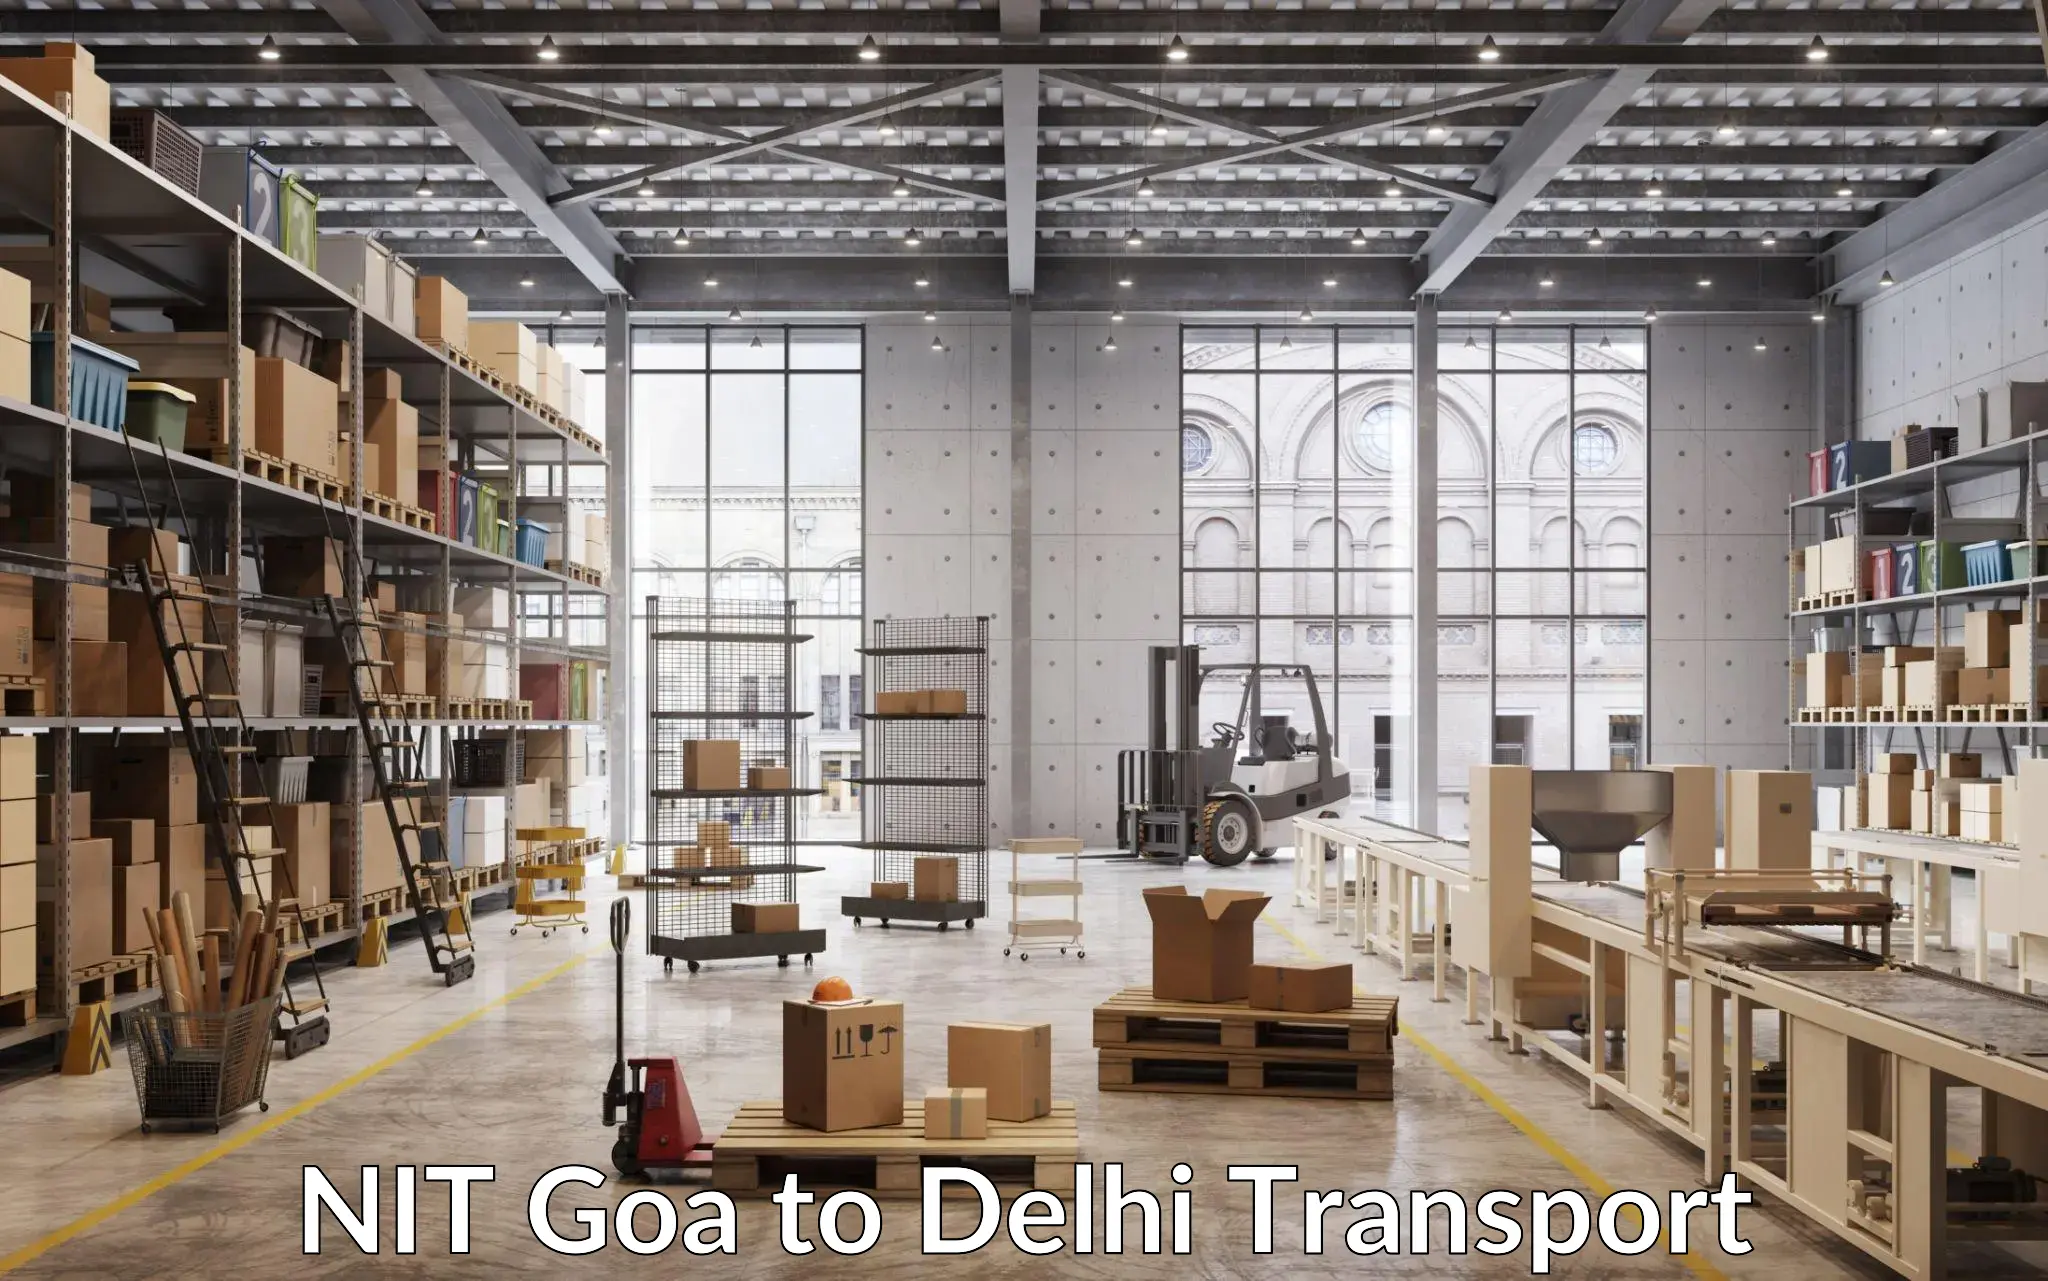 Bike transport service NIT Goa to Delhi